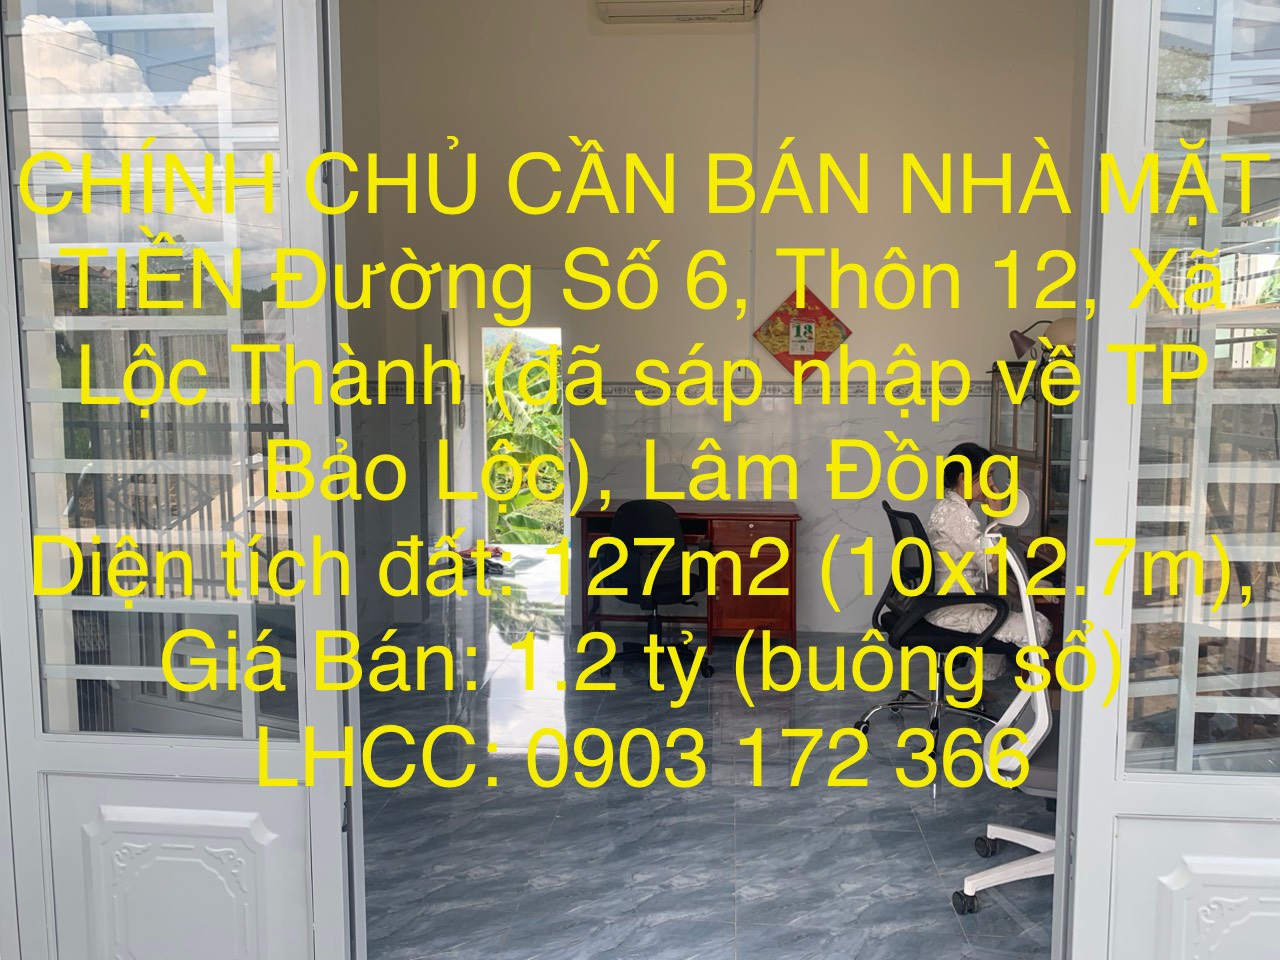 CẦN BÁN NHÀ CHÍNH CHỦ MẶT TIỀN Đường Số 6, Thôn 12, Xã Lộc Thành (đã sáp nhập về TP Bảo Lộc), Lâm - Ảnh chính